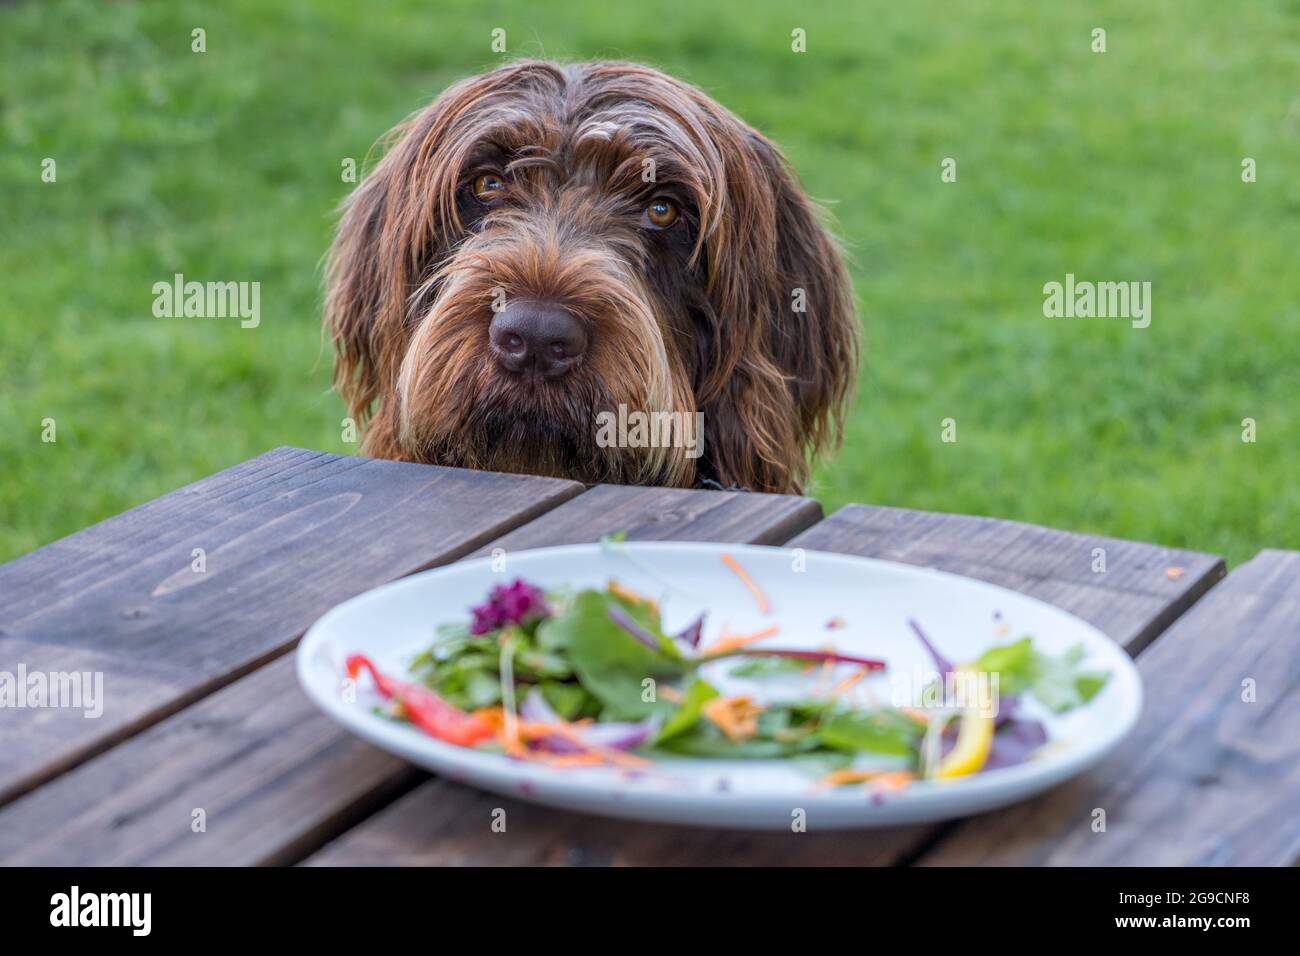 Un chien Griffon Korthals avec un regard de plaident ou de culpabilité. Une assiette avec les restes d'une salade et pas de viande au premier plan. Banque D'Images